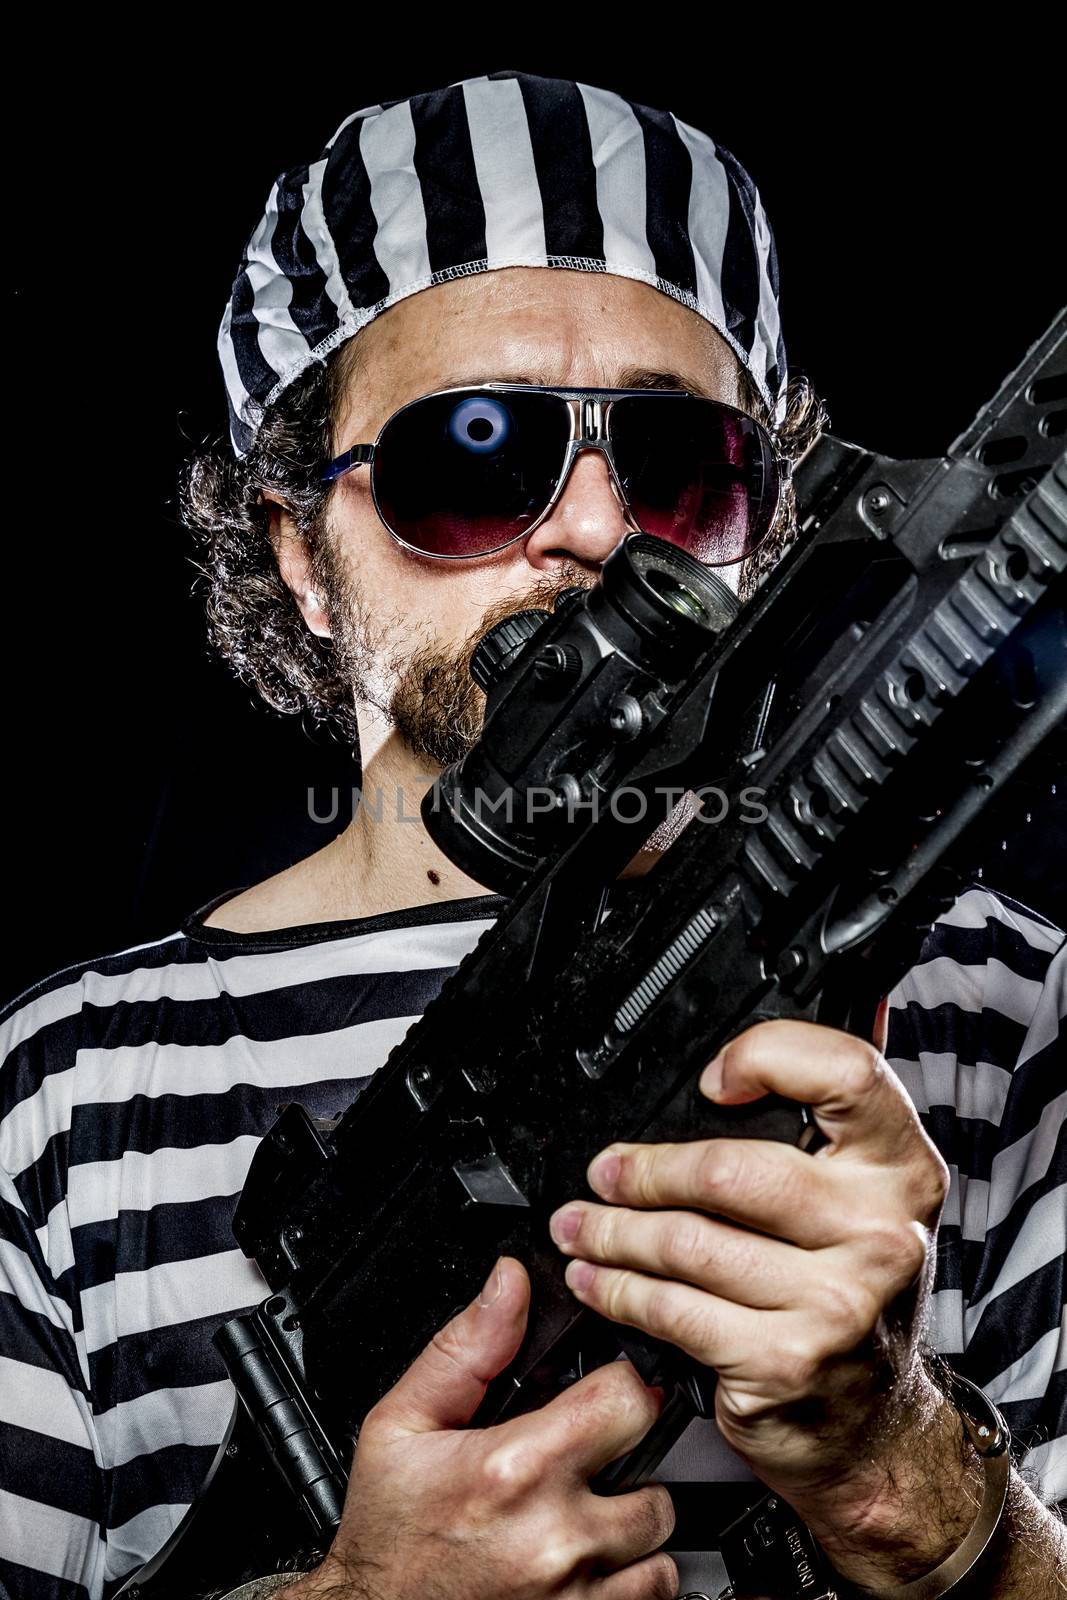 Opposition, Prison riot concept. Man holding a machine gun, prisoner